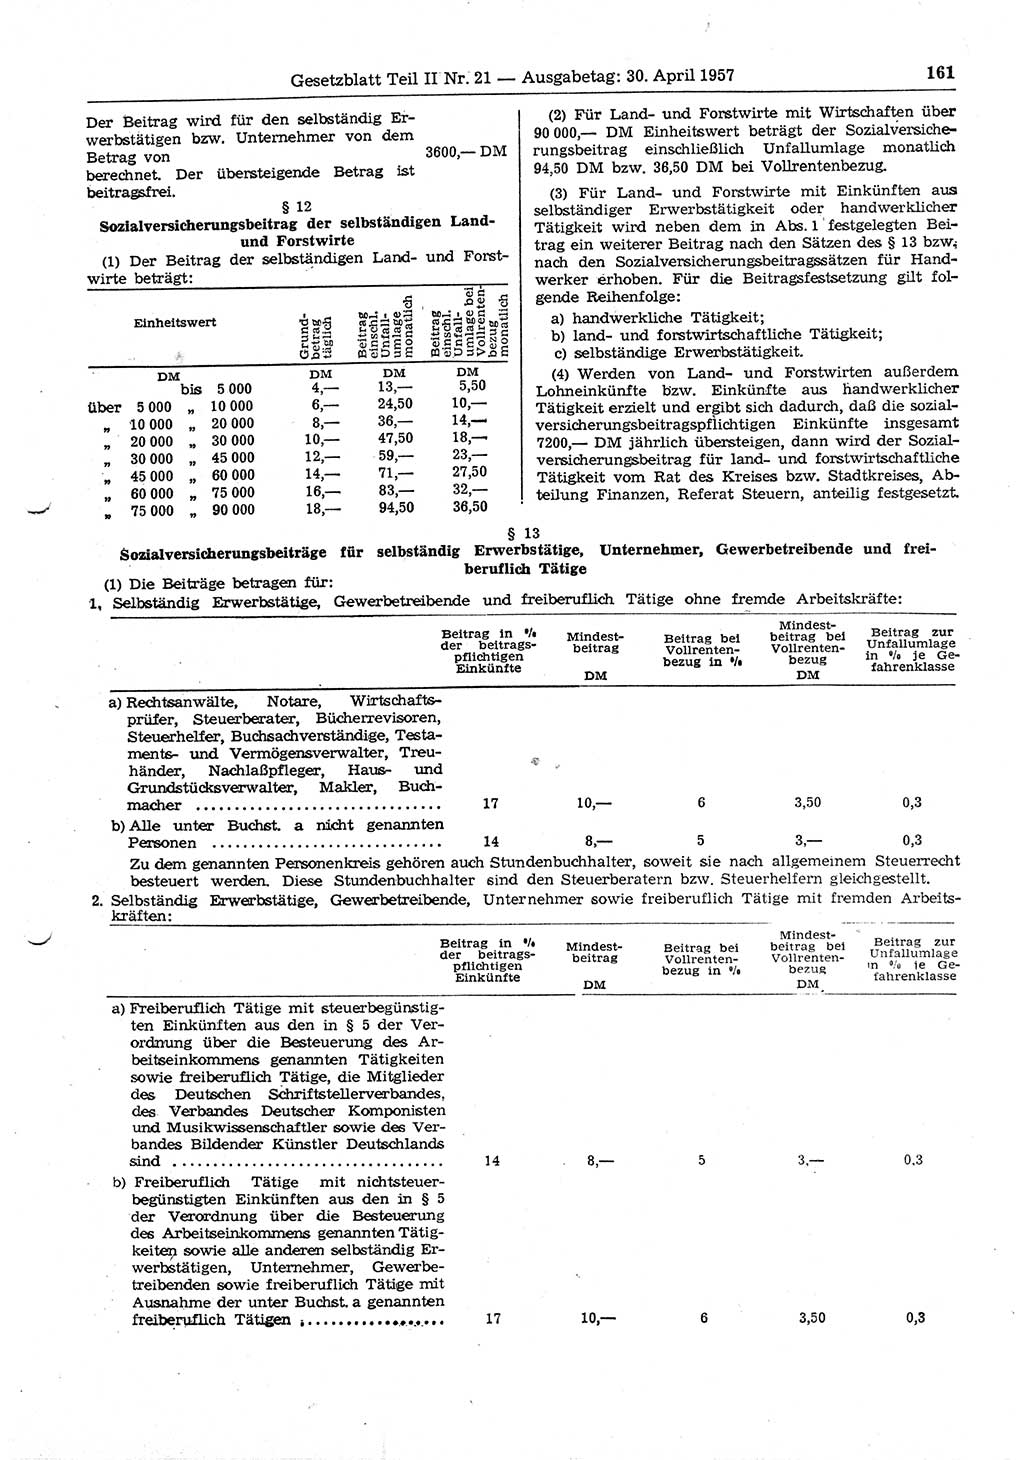 Gesetzblatt (GBl.) der Deutschen Demokratischen Republik (DDR) Teil ⅠⅠ 1957, Seite 161 (GBl. DDR ⅠⅠ 1957, S. 161)